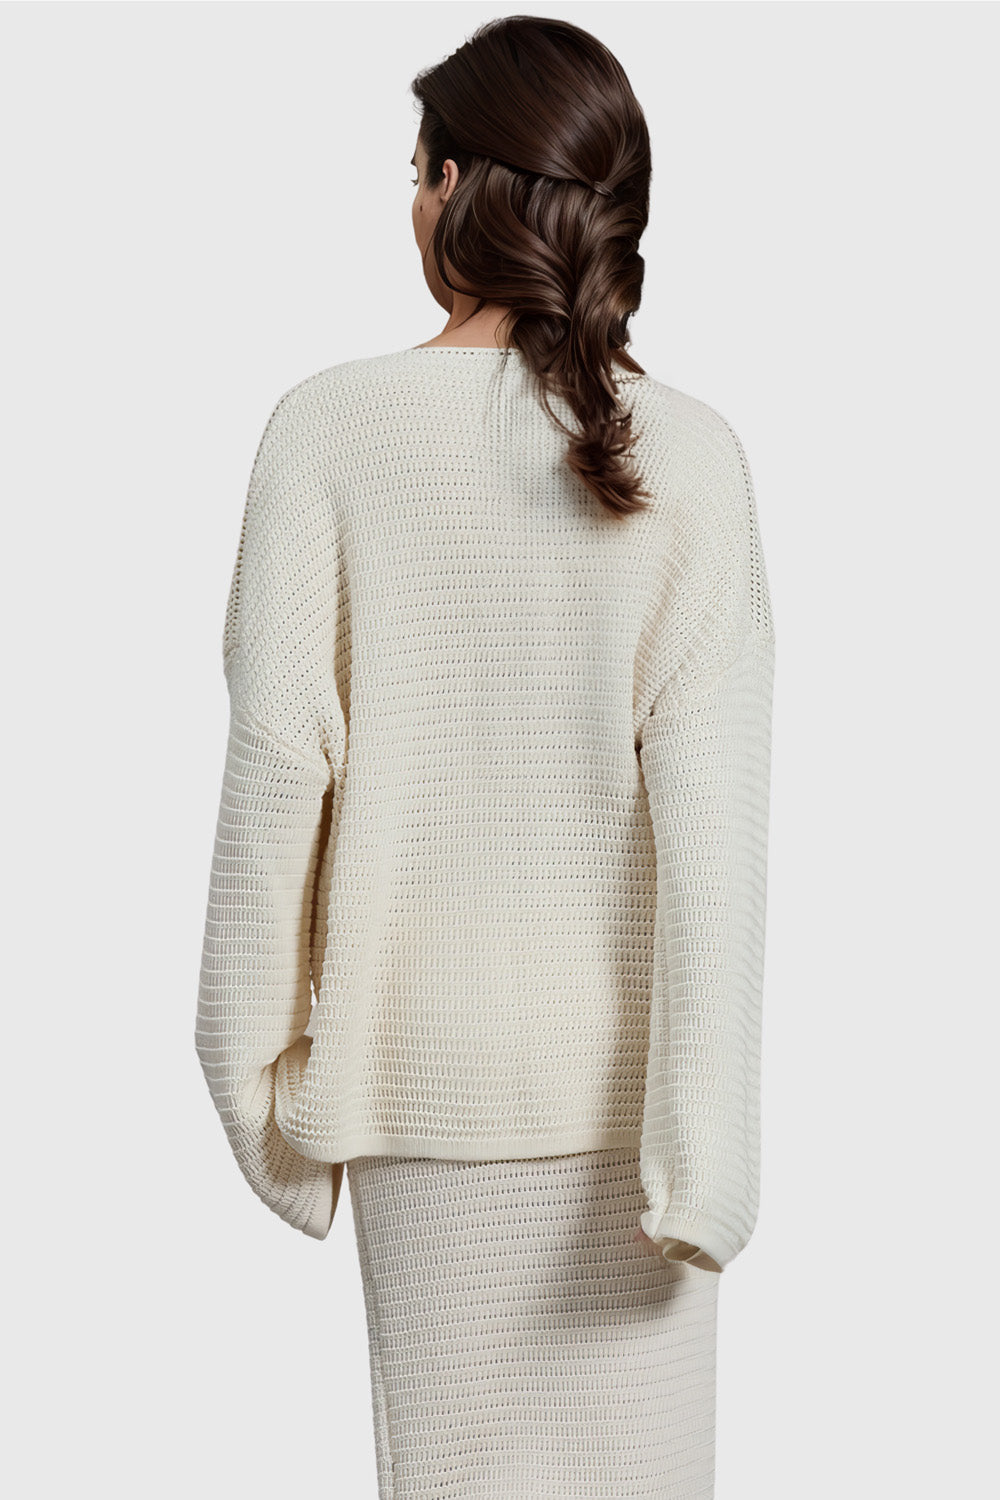 Knitted V Neckline Sweater - White